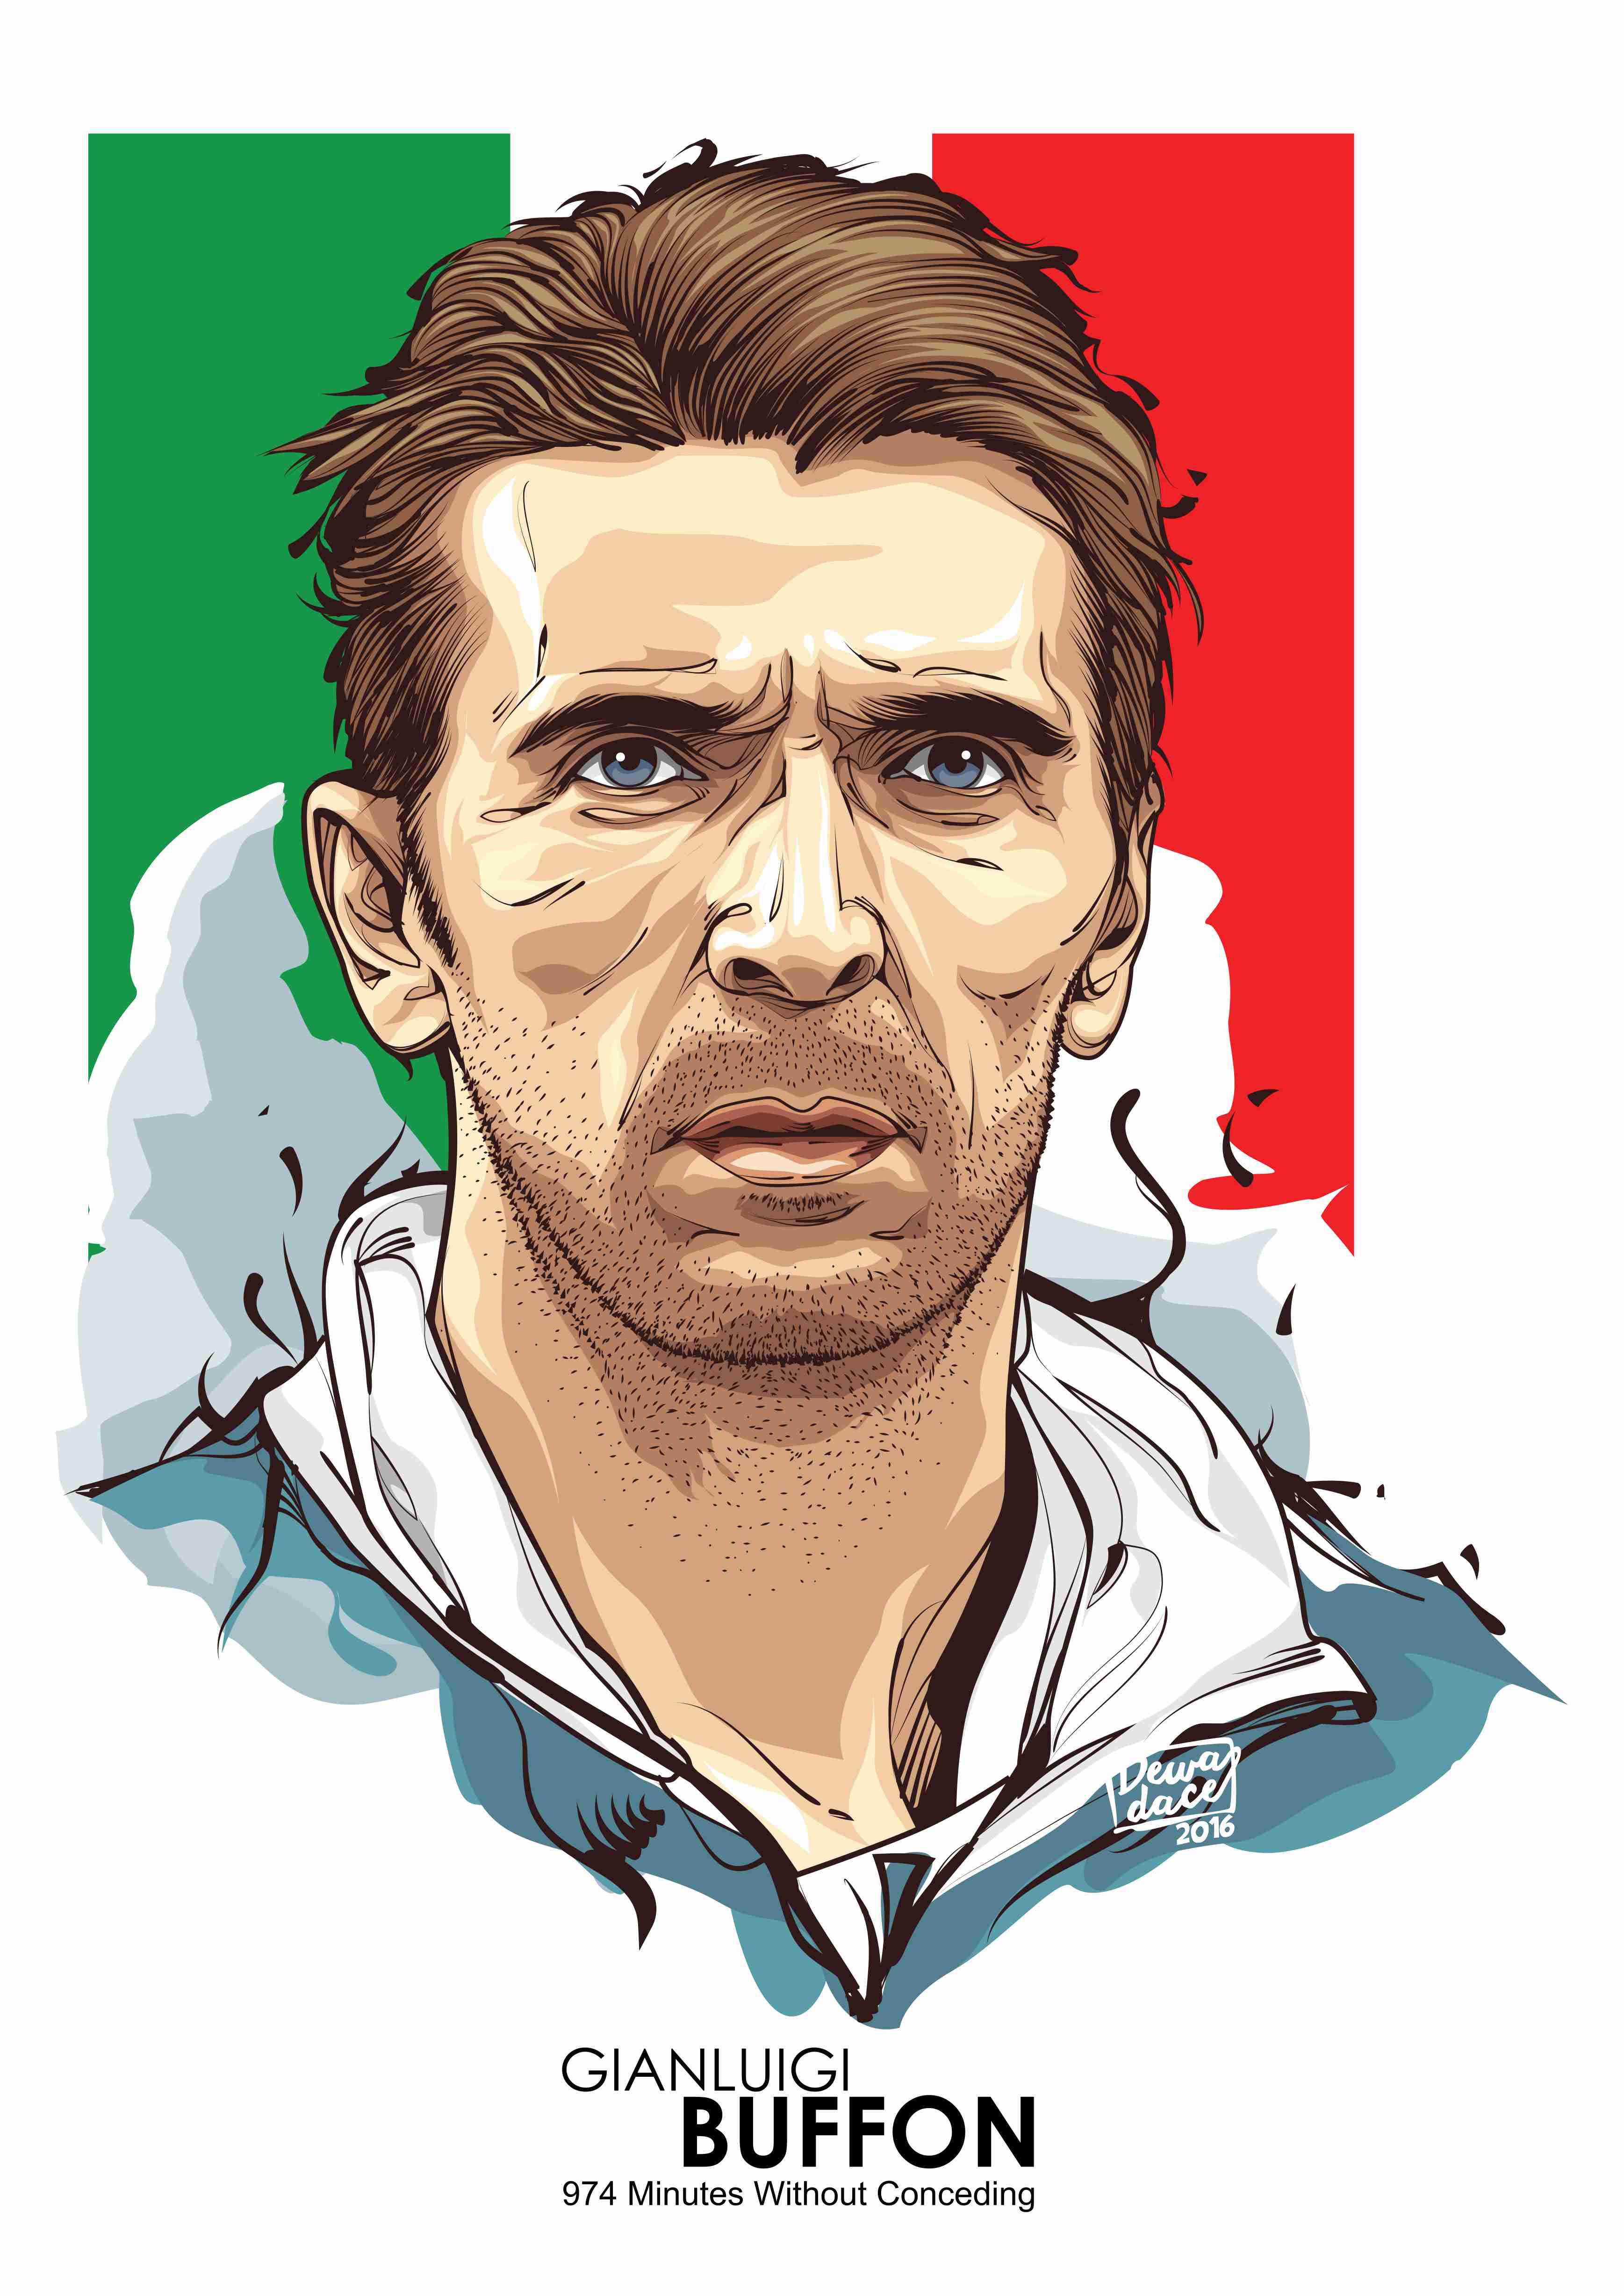 Draw Gianluigi Buffon - HD Wallpaper 